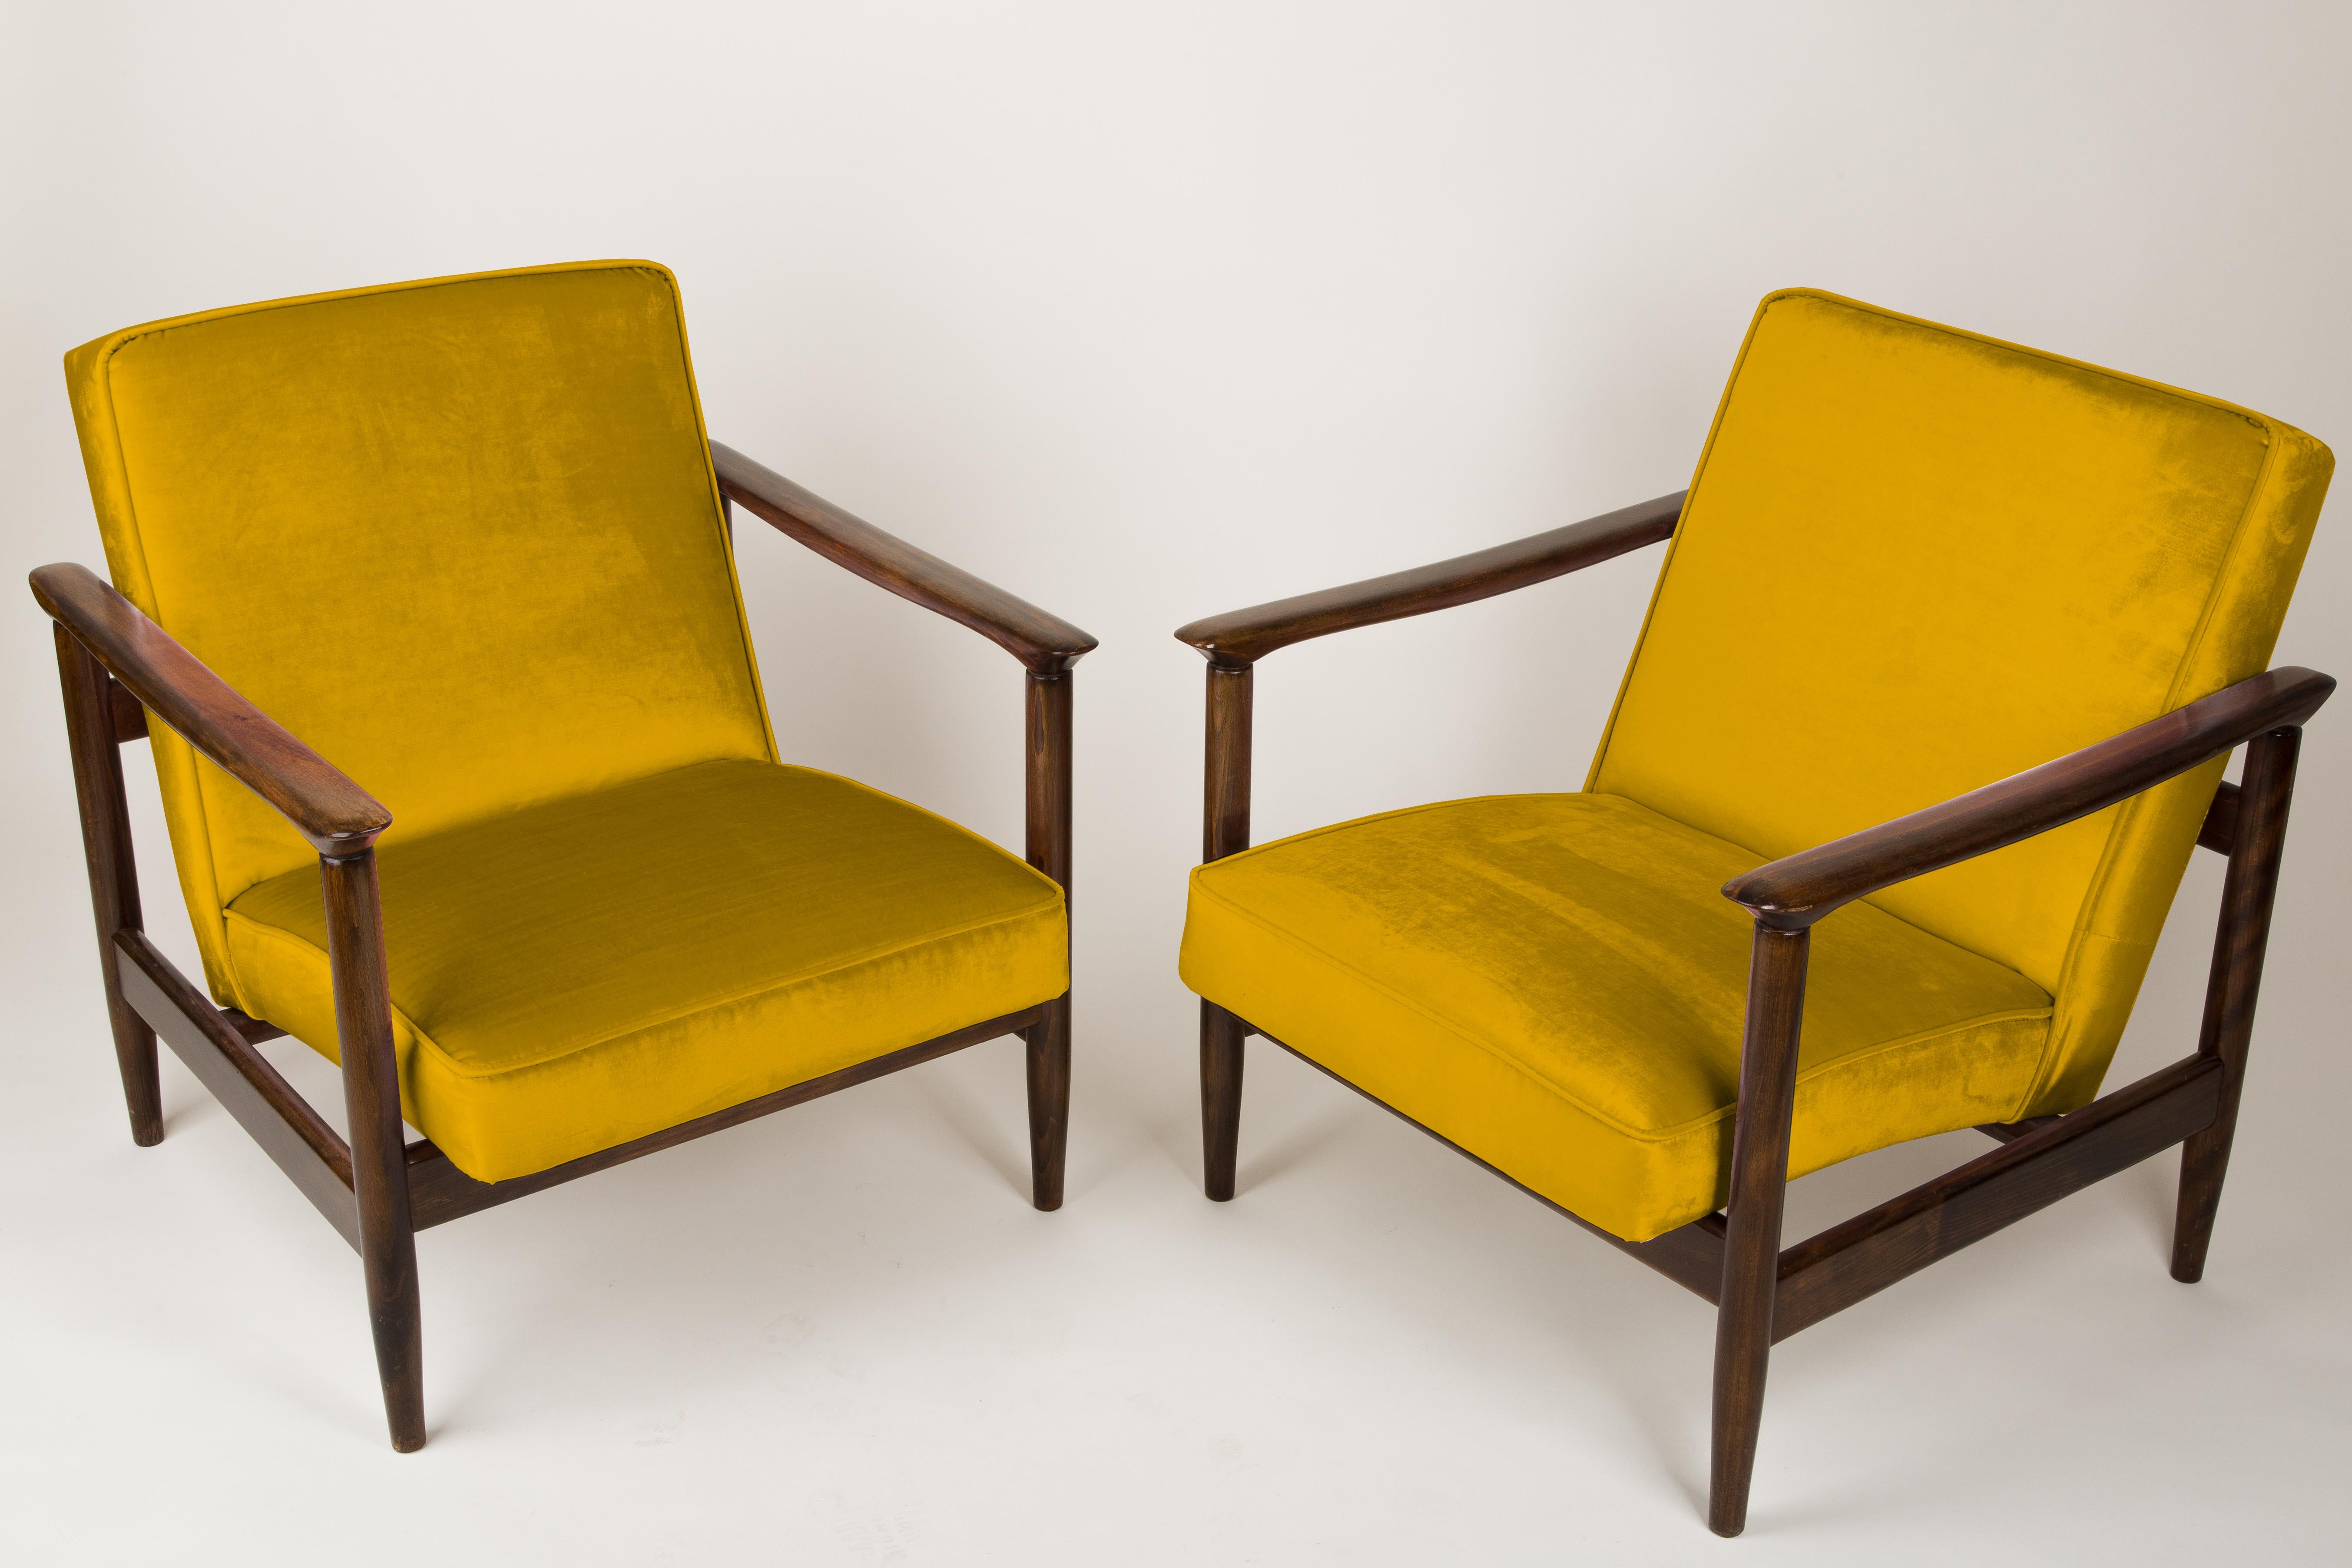 Ein Paar Sessel GFM-142, entworfen von Edmund Homa. Die Sessel wurden in den 1960er Jahren in der Möbelfabrik Gosciecinska hergestellt. Sie sind aus massivem Buchenholz gefertigt. Der GFM-142 Sessel gilt als einer der besten polnischen Sesseldesigns